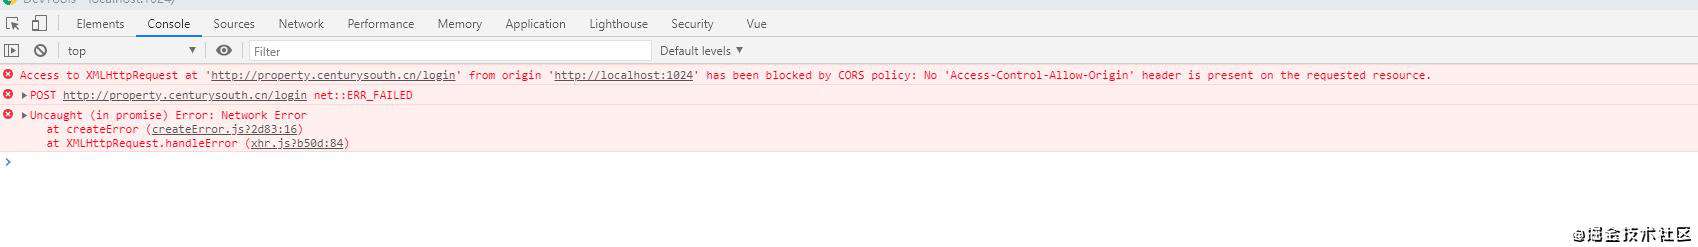 【求助】使用Axios 发送请求，密码错误的时候没有返回任何东西，直接报错。可是如果密码正确的时候，发送请求会返回东西，不会报错。